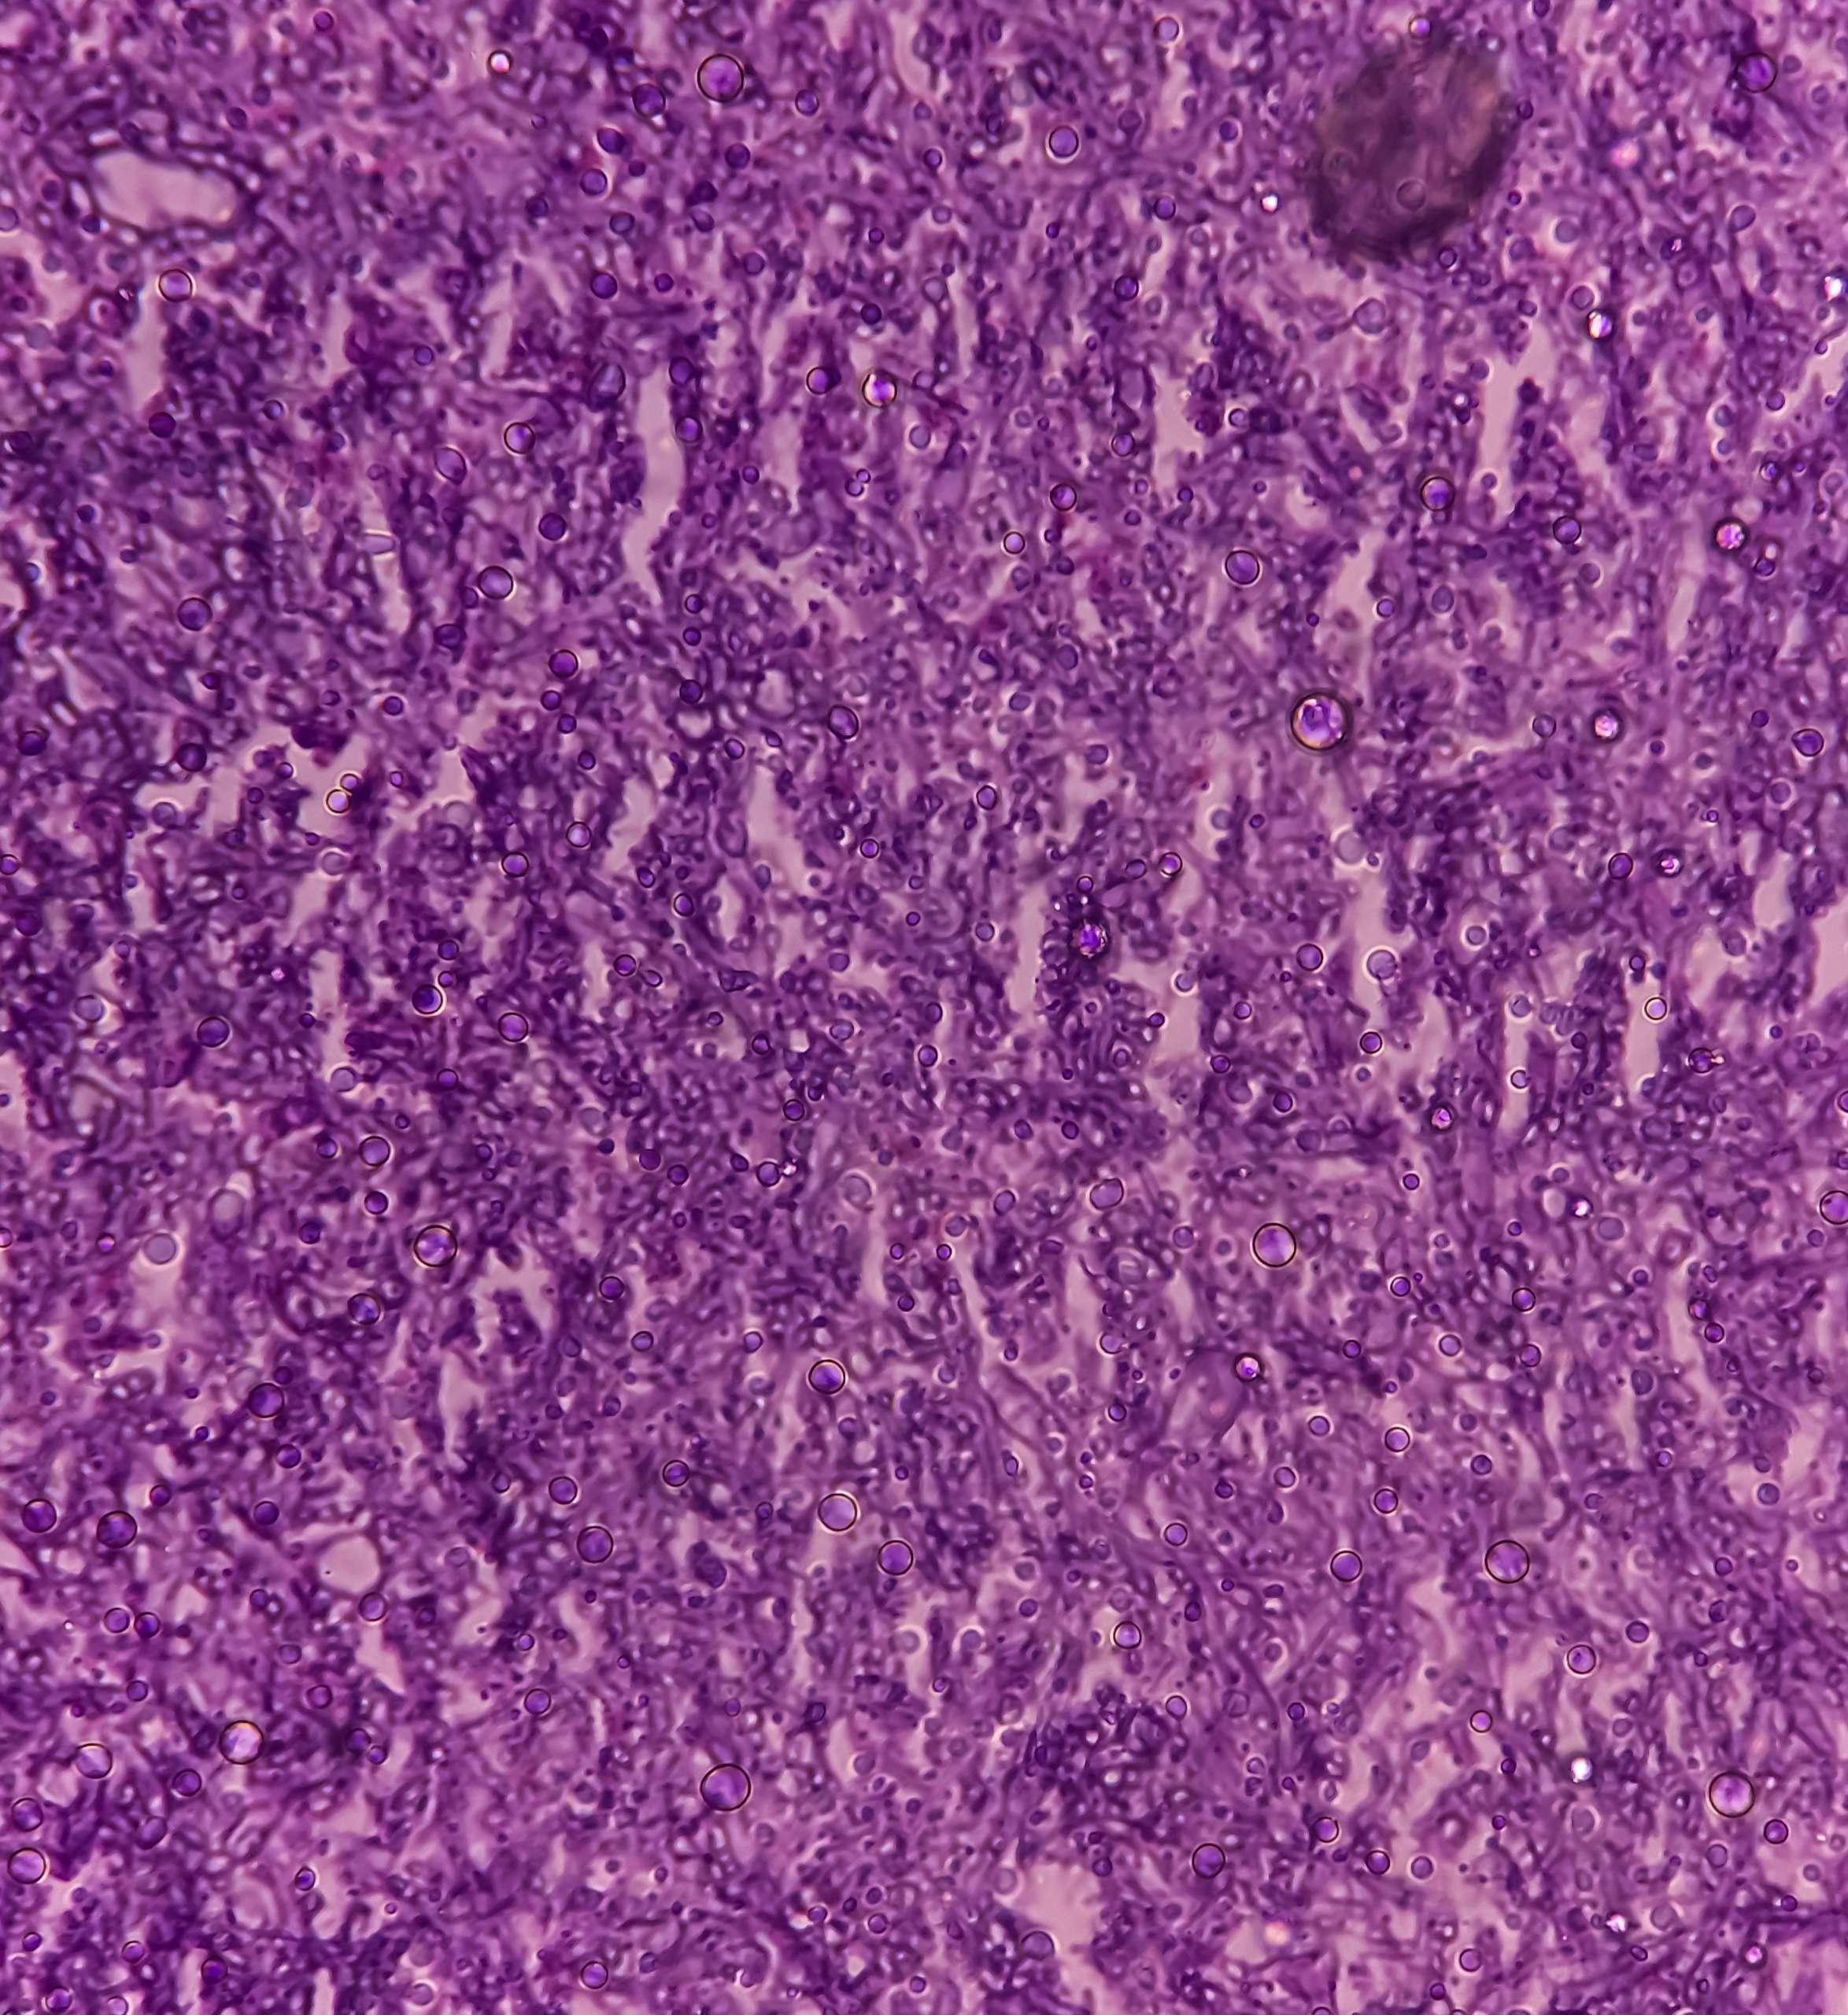 Pilzinfektion der Lunge, mikroskopisches Bild: Eine Hämatoxylin- und Eosin-Färbung zeigt Pilzhyphen einer histologischen Gewebeblockprobe.